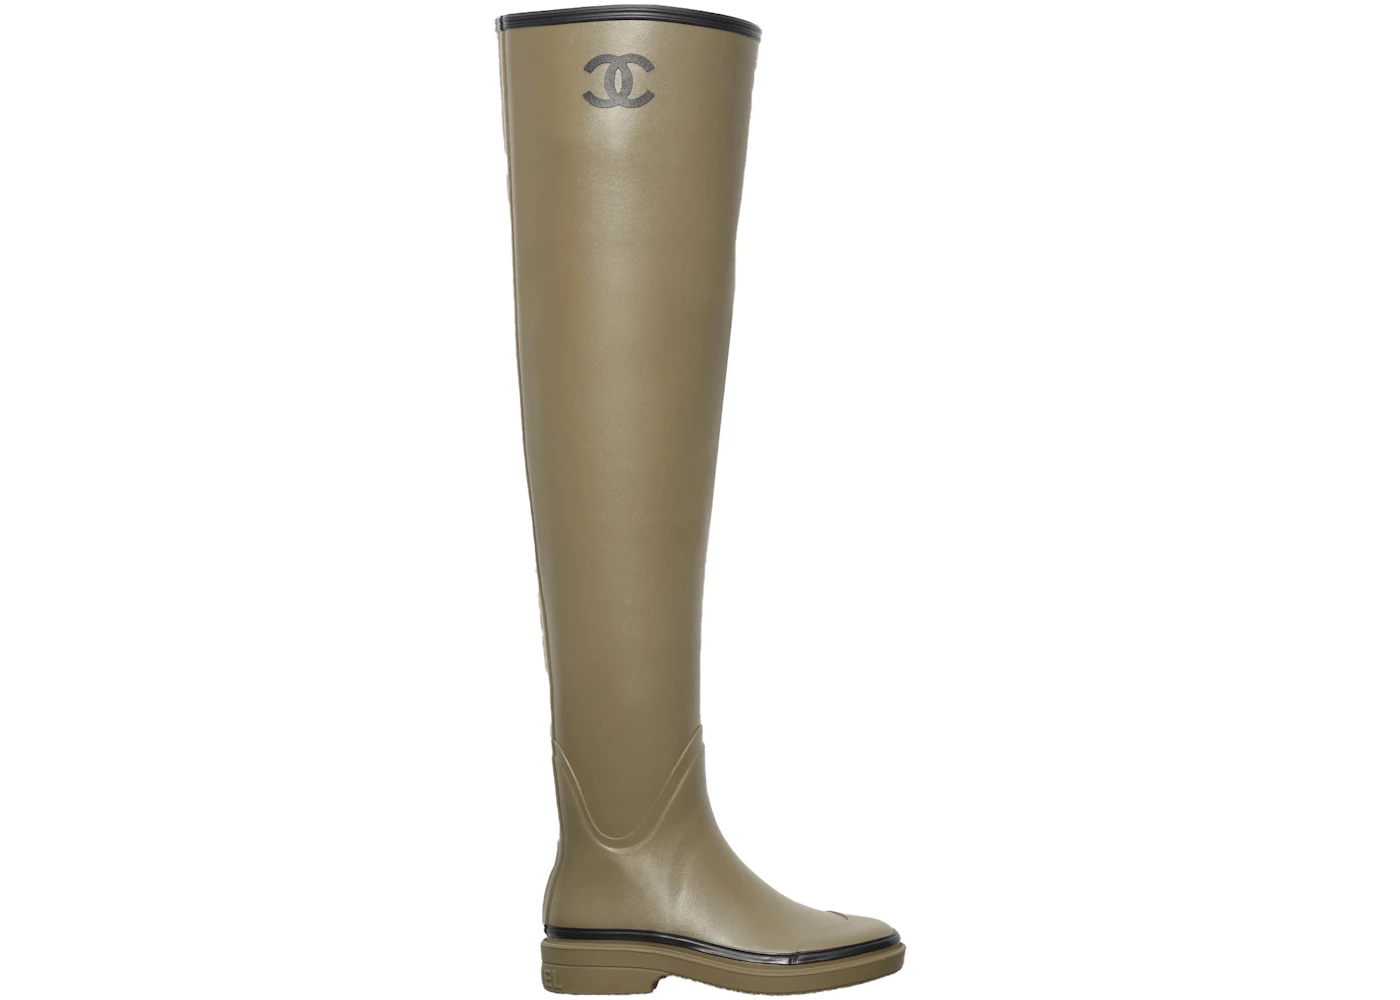 Chanel Thigh High Rubber Rain Boots Dark Beige - G39625 X56326 K5218 - US